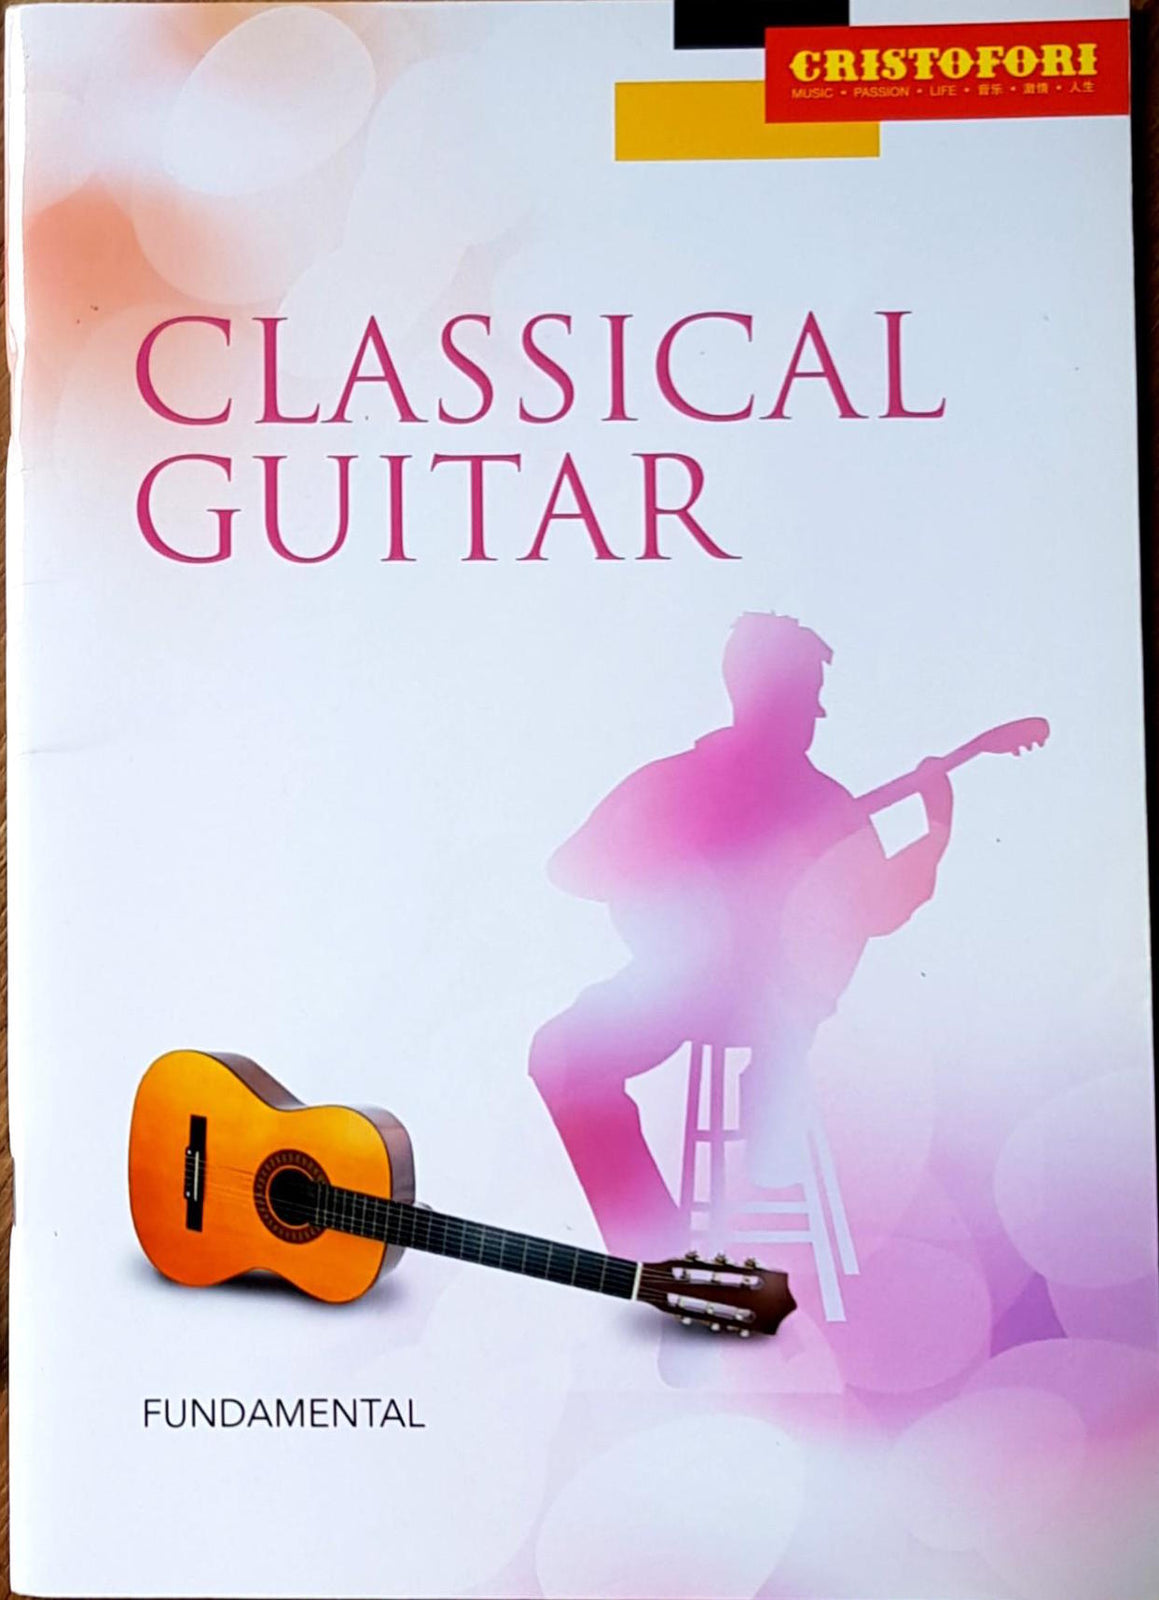 CRISTOFORI Classical Guitar Fundamental Book singapore sg